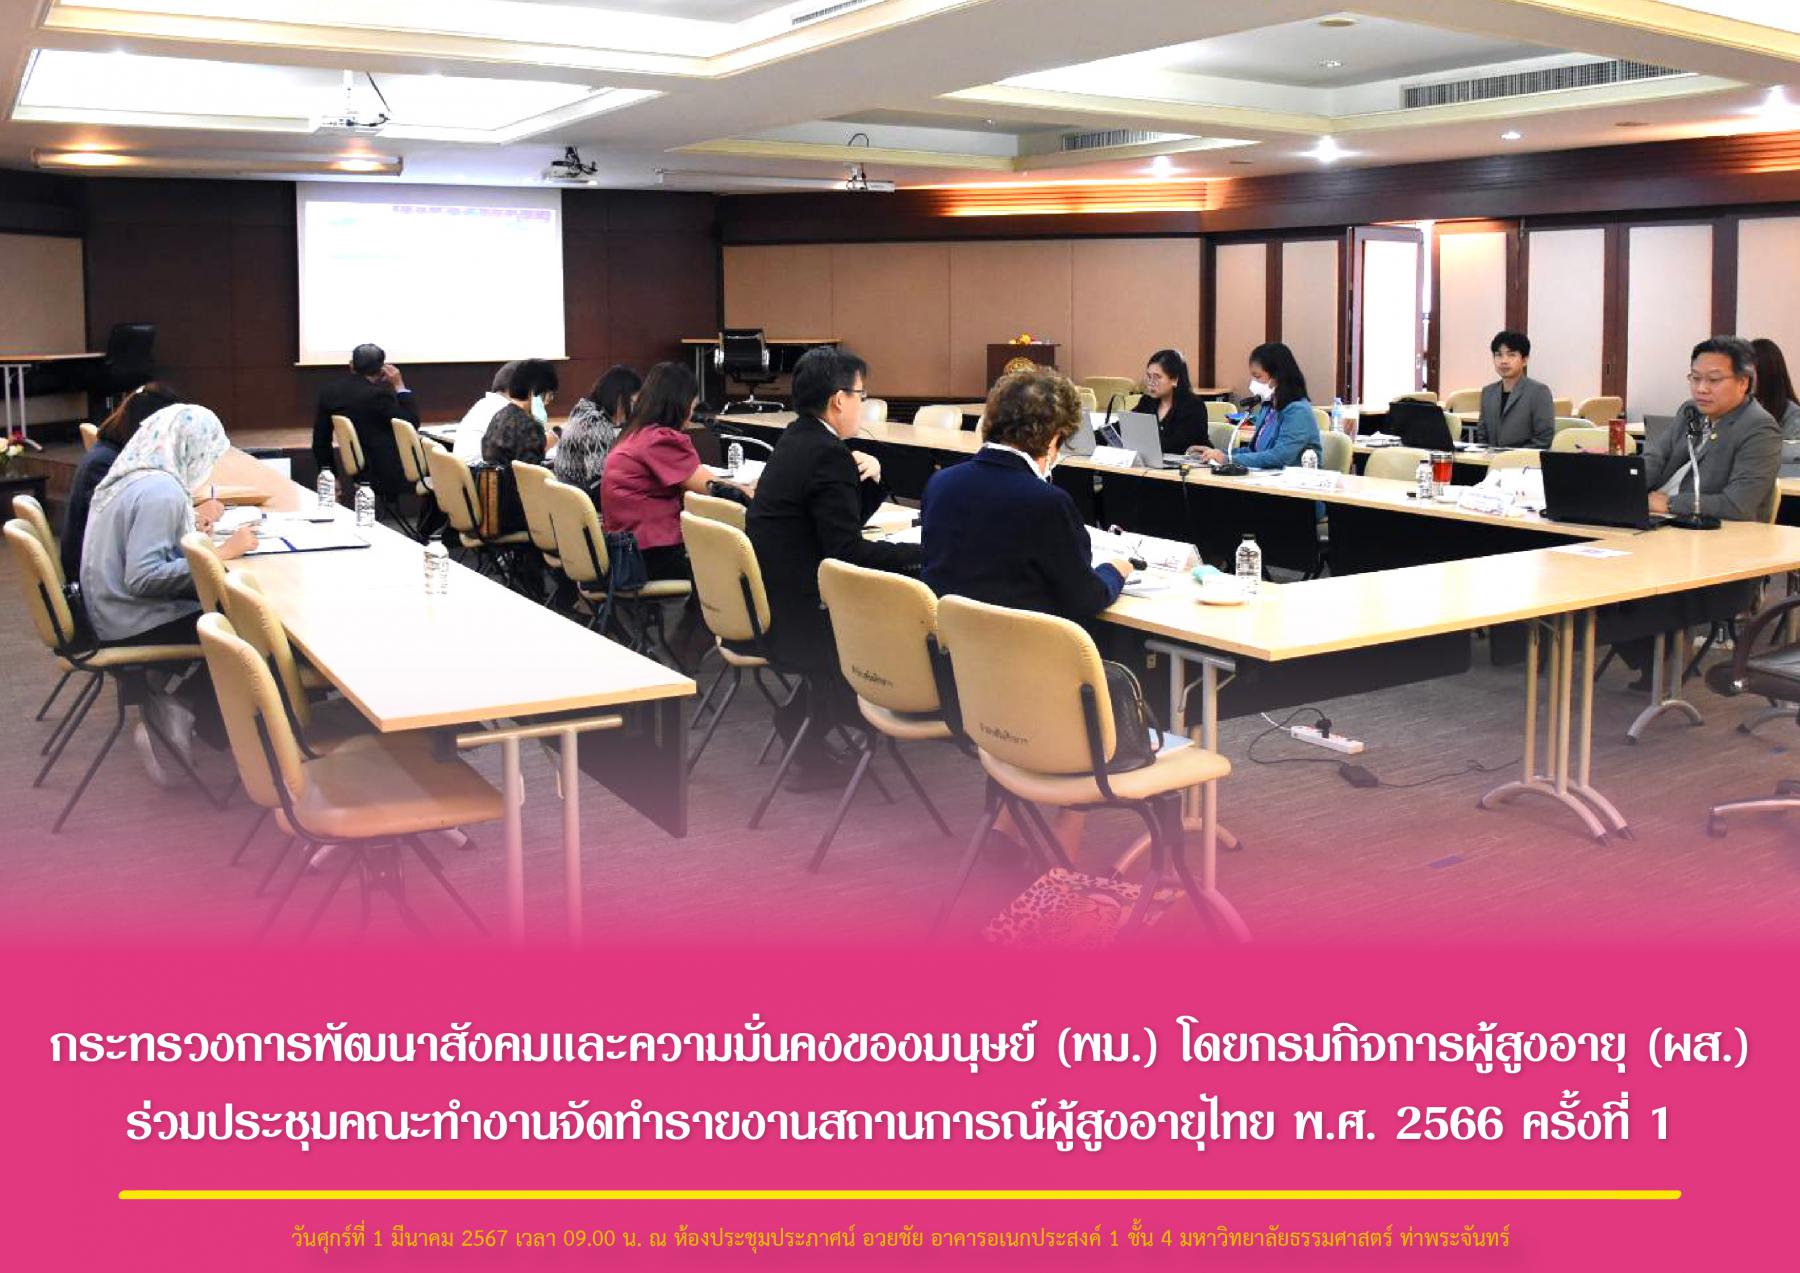 กระทรวงการพัฒนาสังคมและความมั่นคงของมนุษย์ (พม.) โดยกรมกิจการผู้สูงอายุ (ผส.) ร่วมประชุมคณะทำงานจัดทำรายงานสถานการณ์ผู้สูงอายุไทย พ.ศ. 2566 ครั้งที่ 1